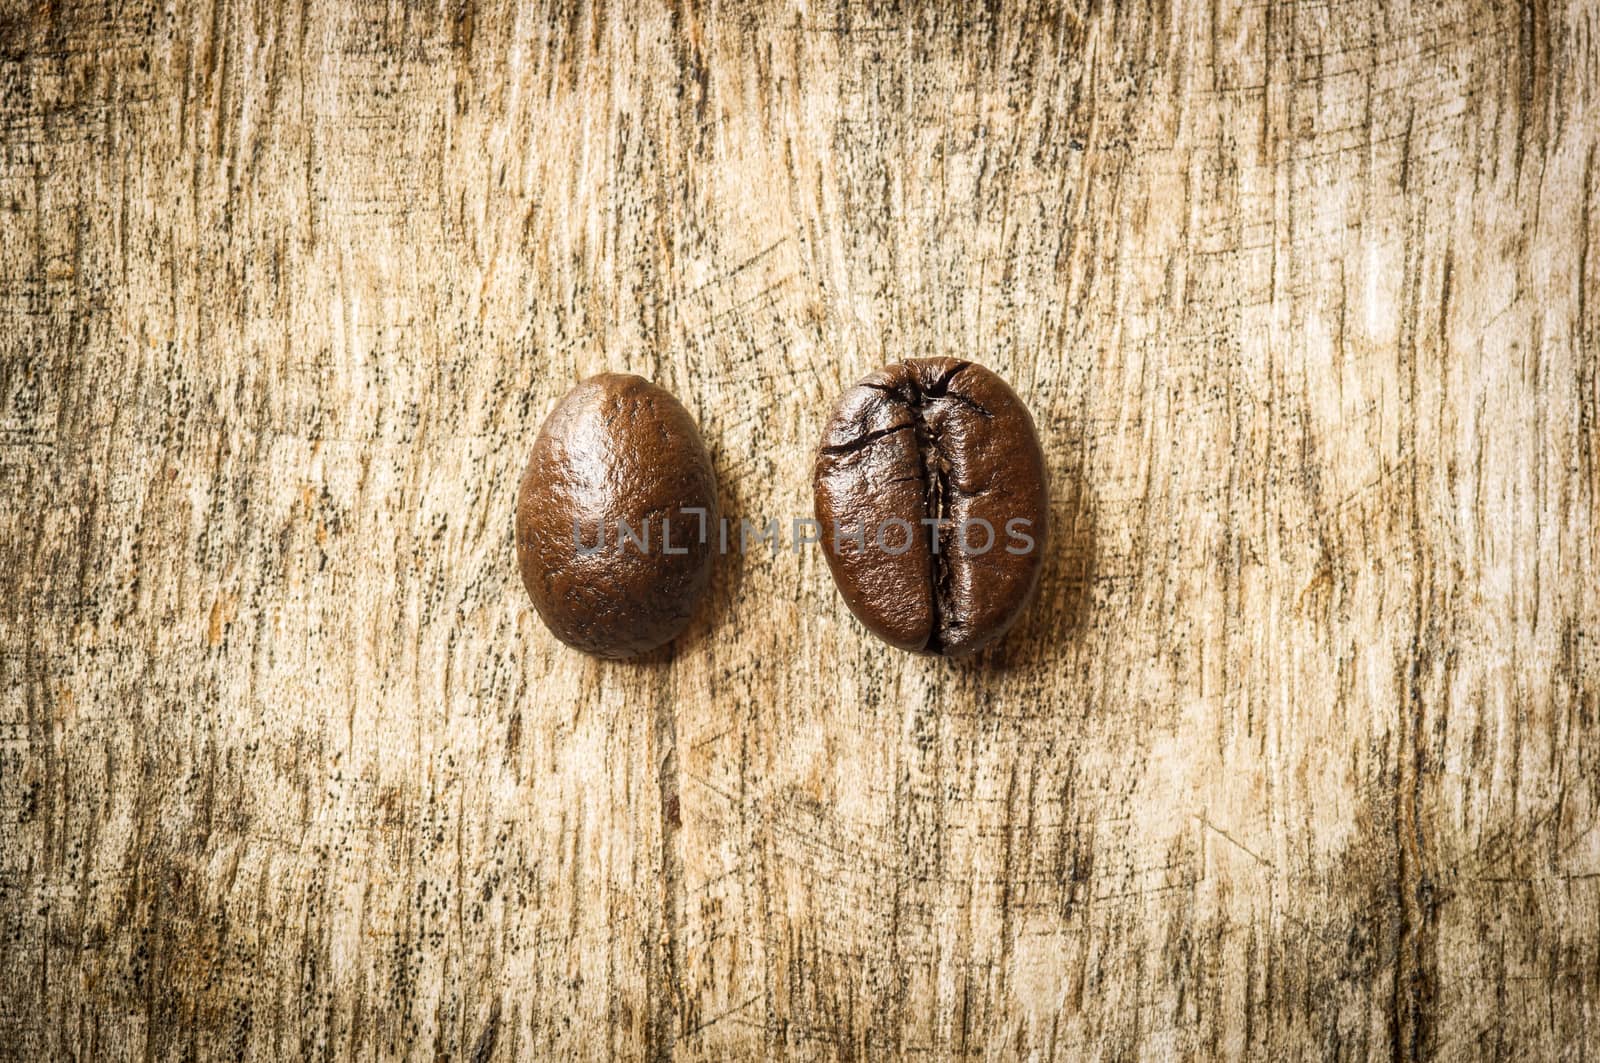 Coffee bean on grunge wooden background.